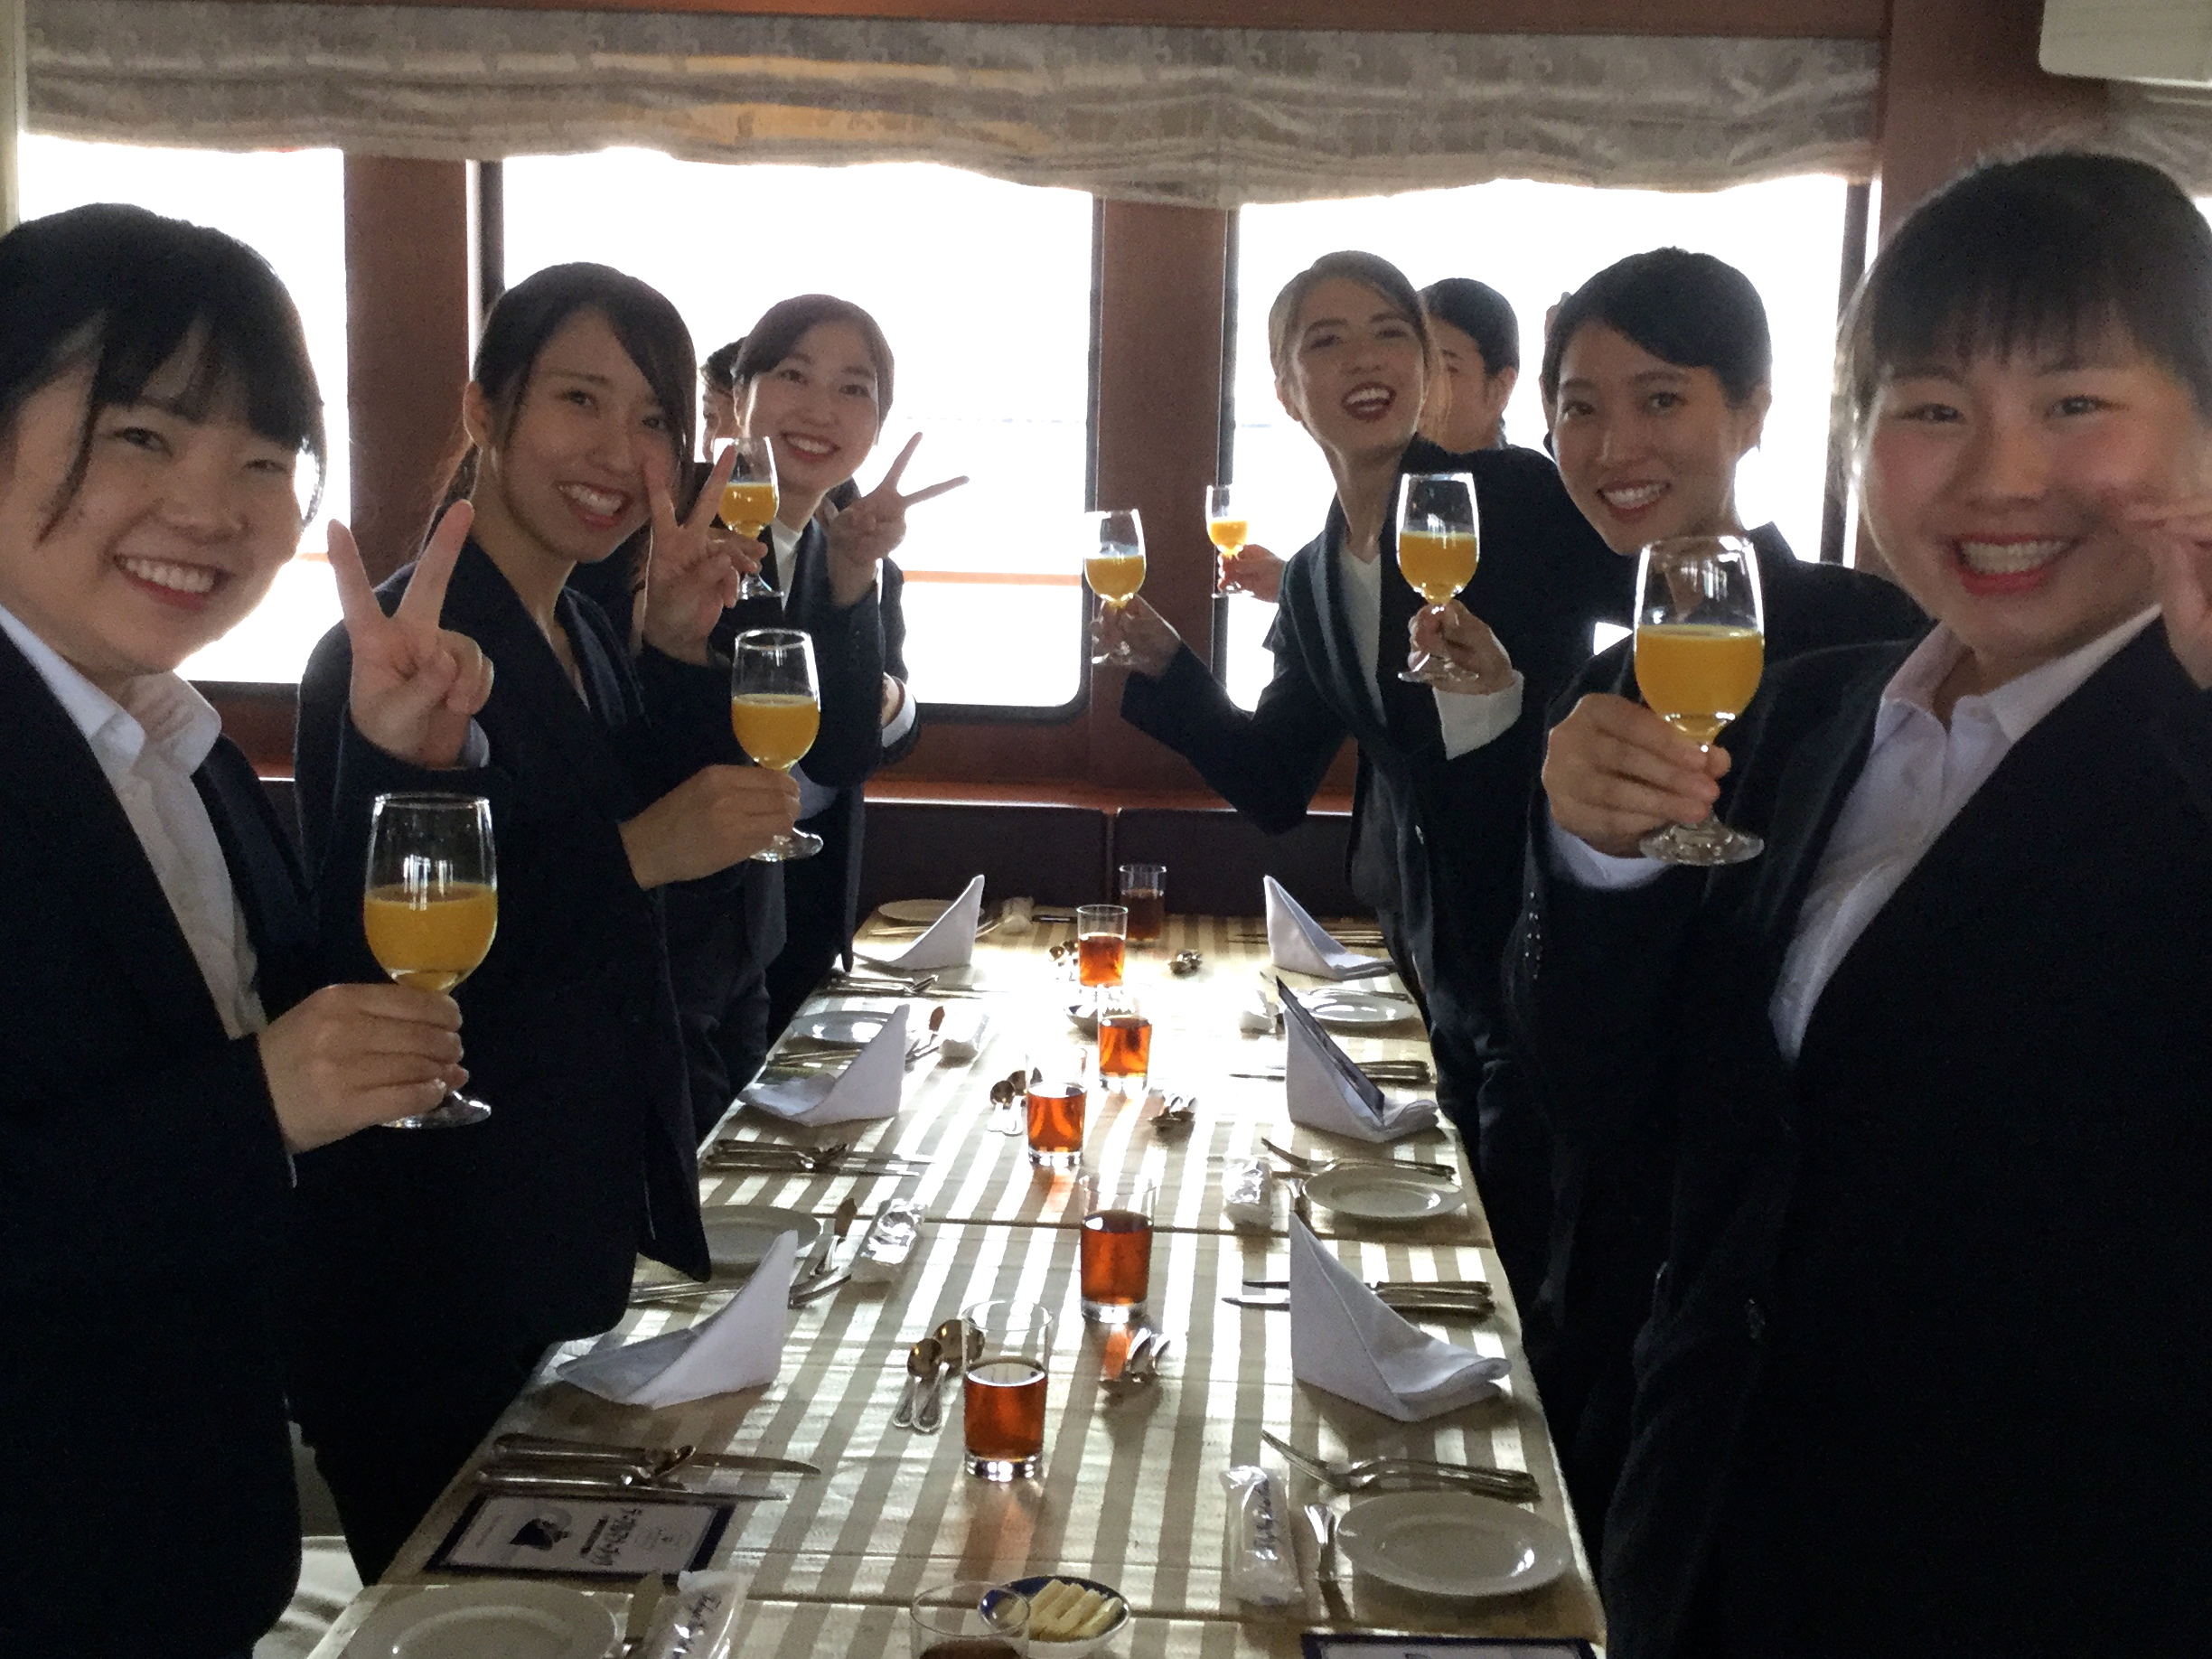 【歯科衛生士科】東京湾でのテーブルマナーランチクルージングで、社会人女性としての必要なテーブルマナーを学びました。